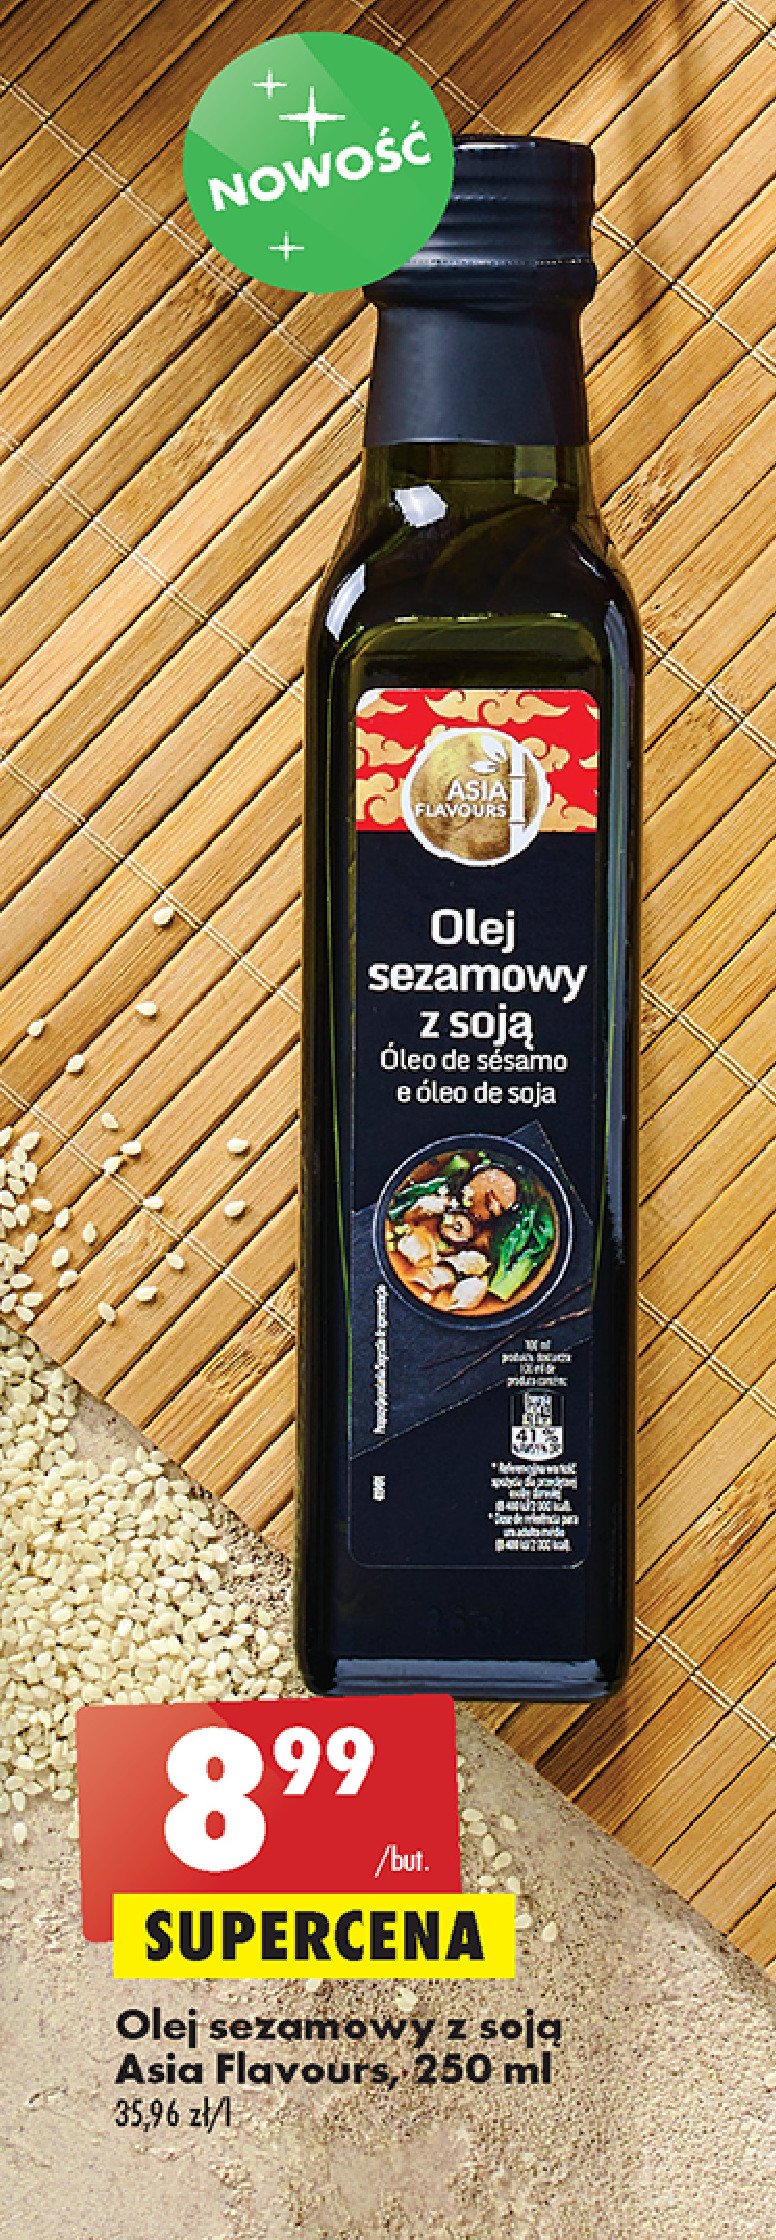 Olej sezamowy Asia flavours promocja